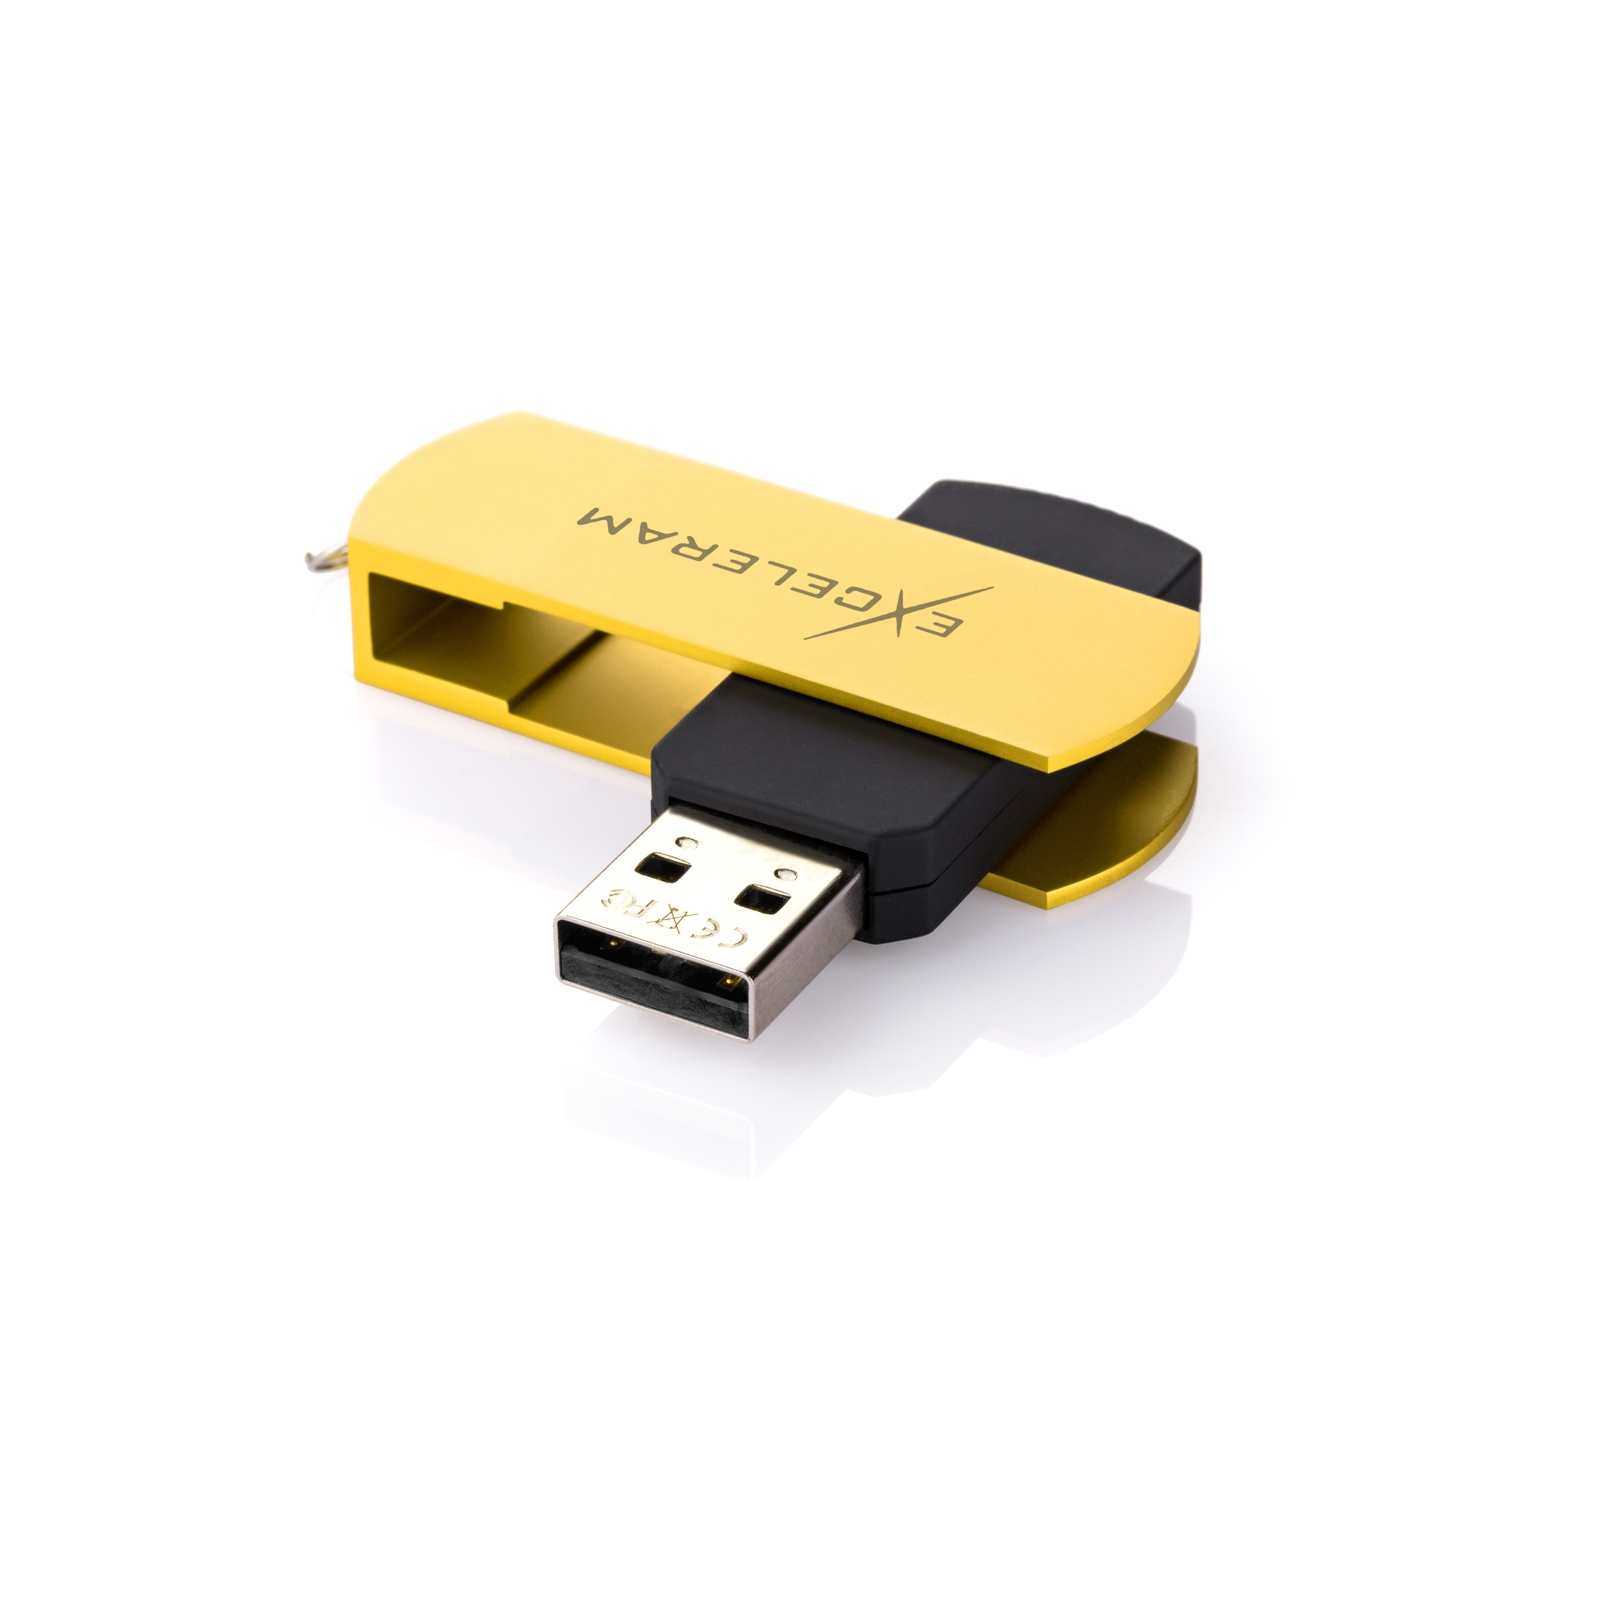 USB флеш накопичувач eXceleram 16GB P2 Series White/Black USB 2.0 (EXP2U2WH2B16) зображення 2